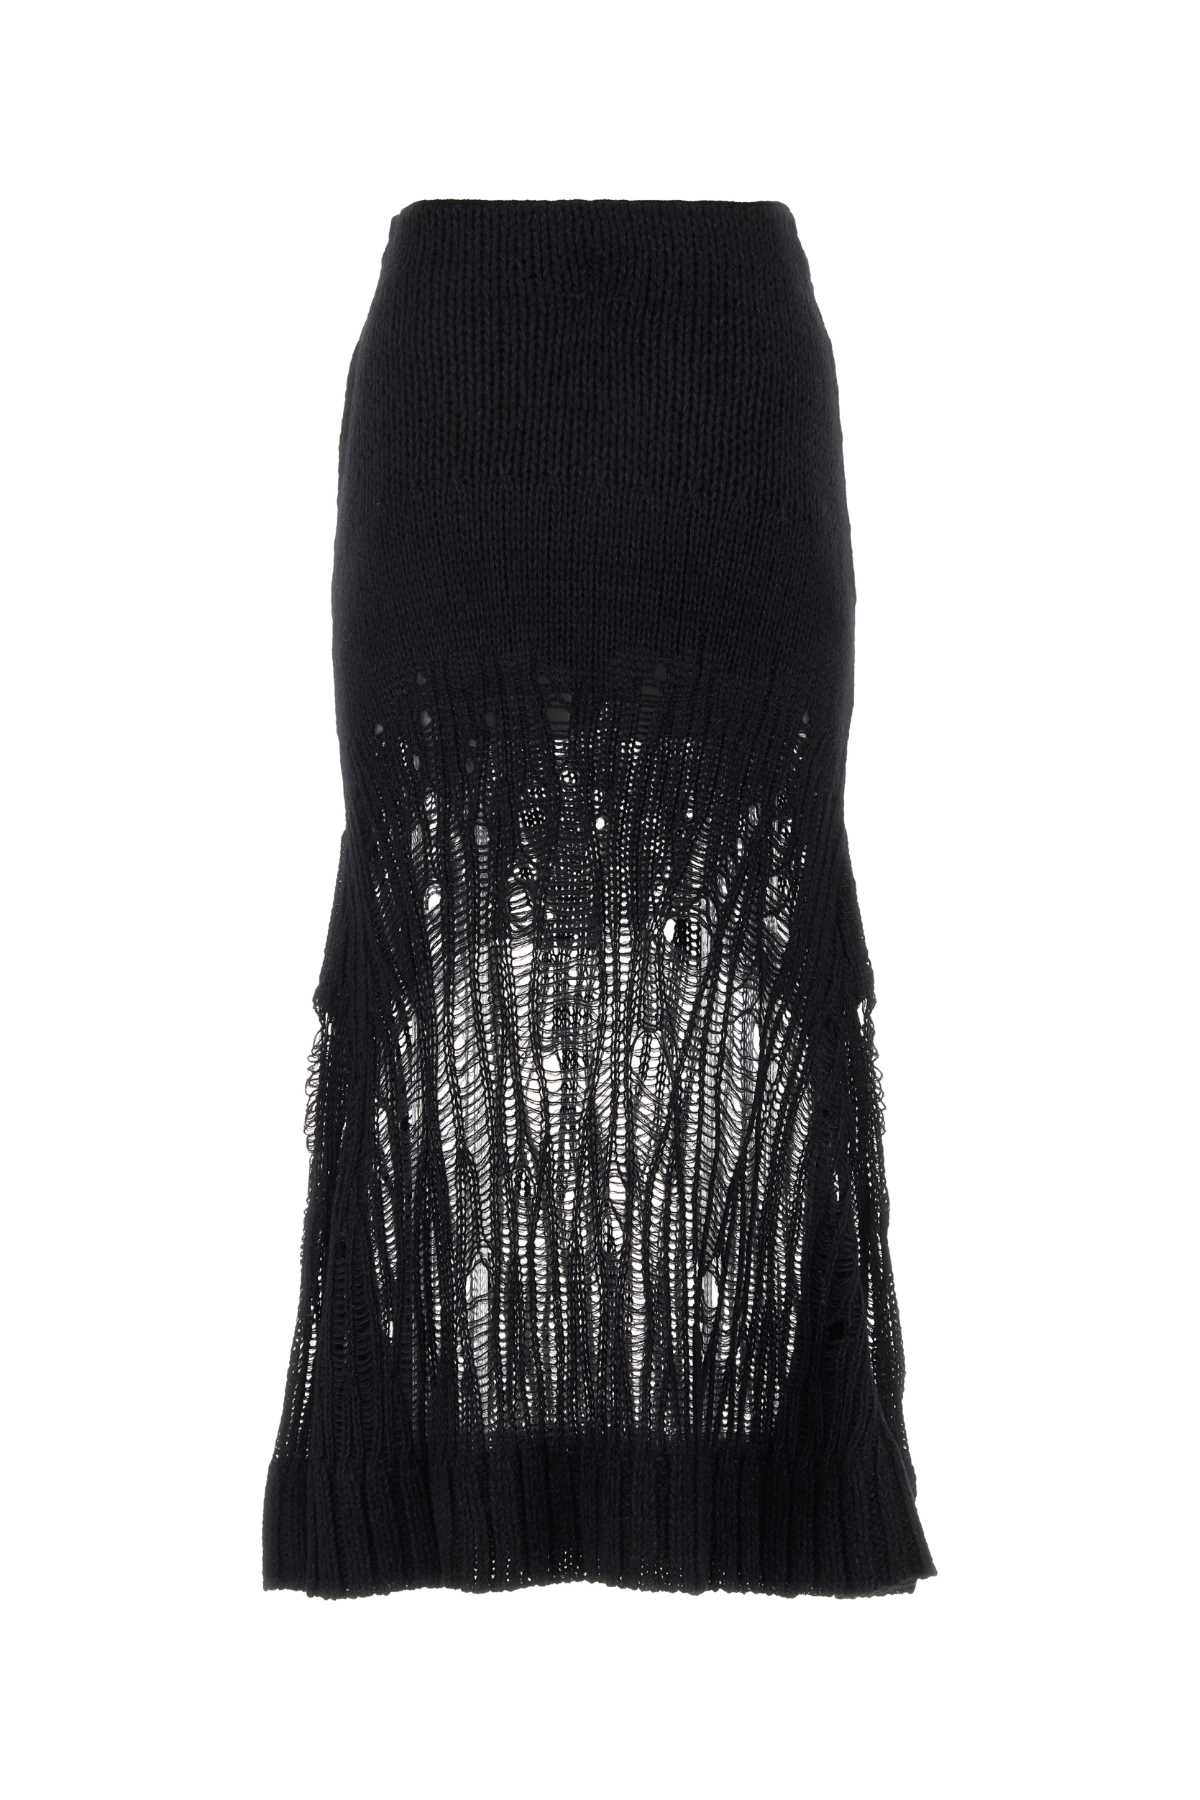 Shop Chloé Black Wool Blend Skirt